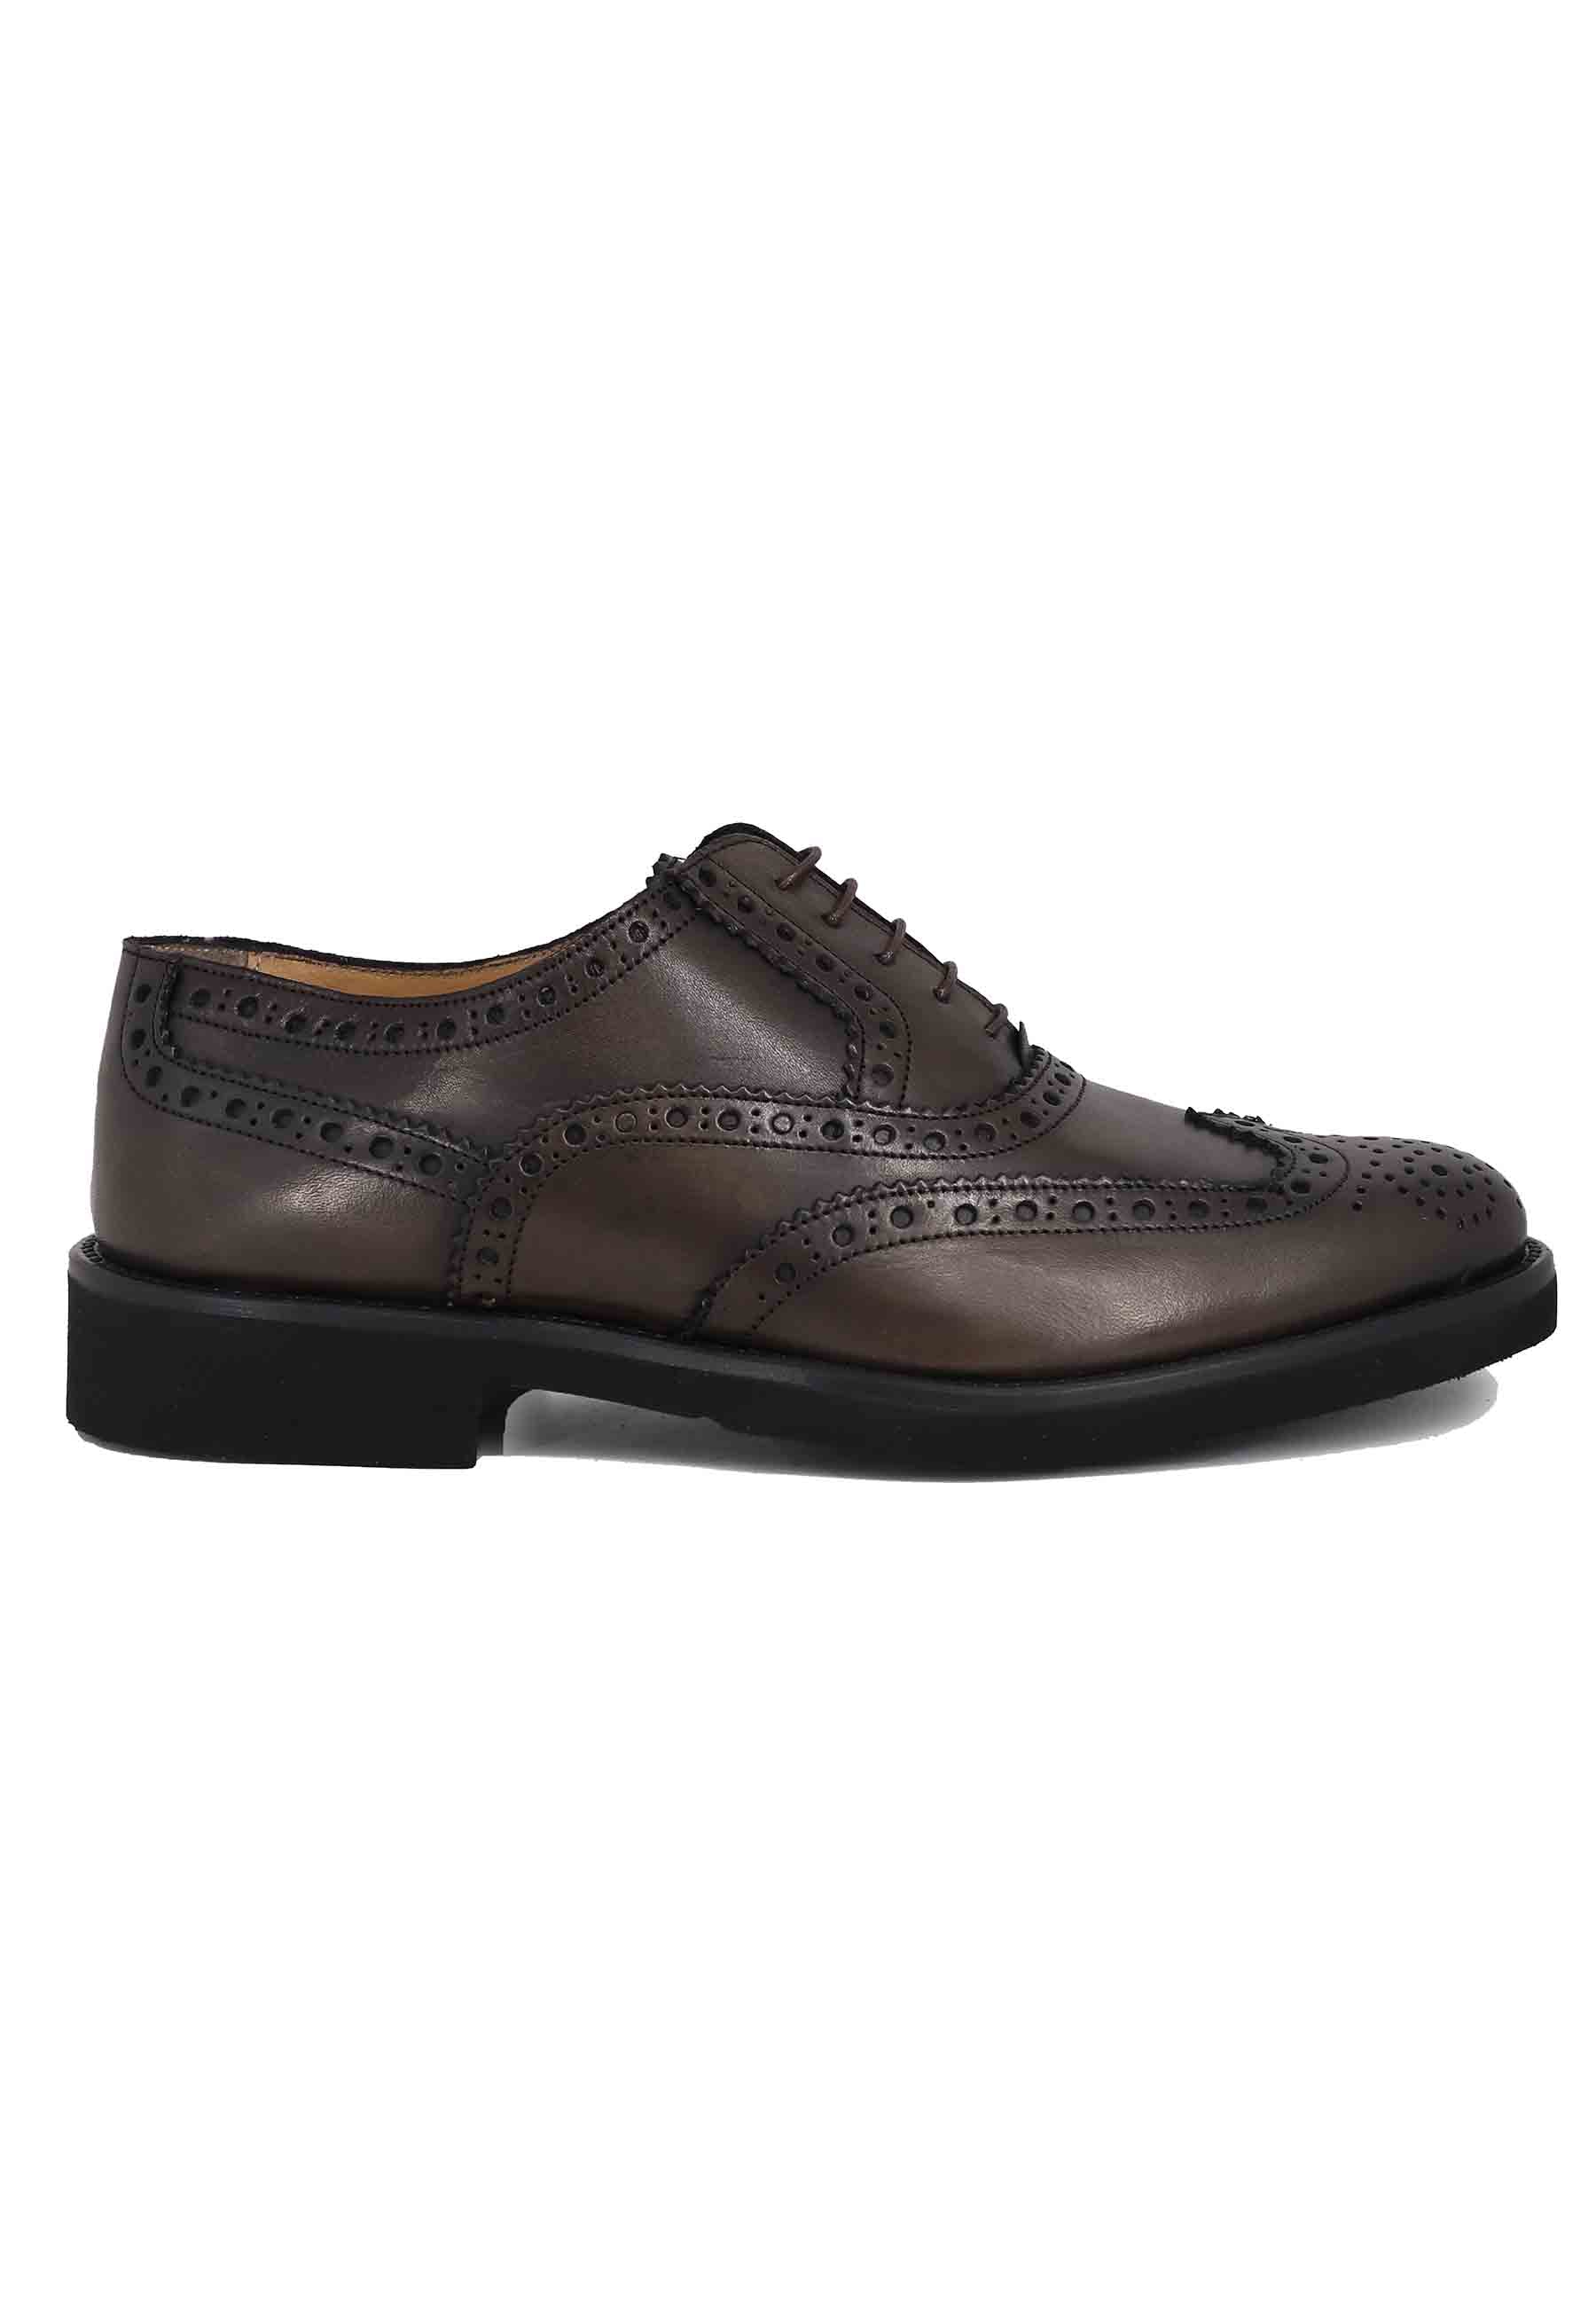 Chaussures à lacets pour hommes en cuir marron foncé avec surpiqûres anglaises et semelle en caoutchouc ultra légère